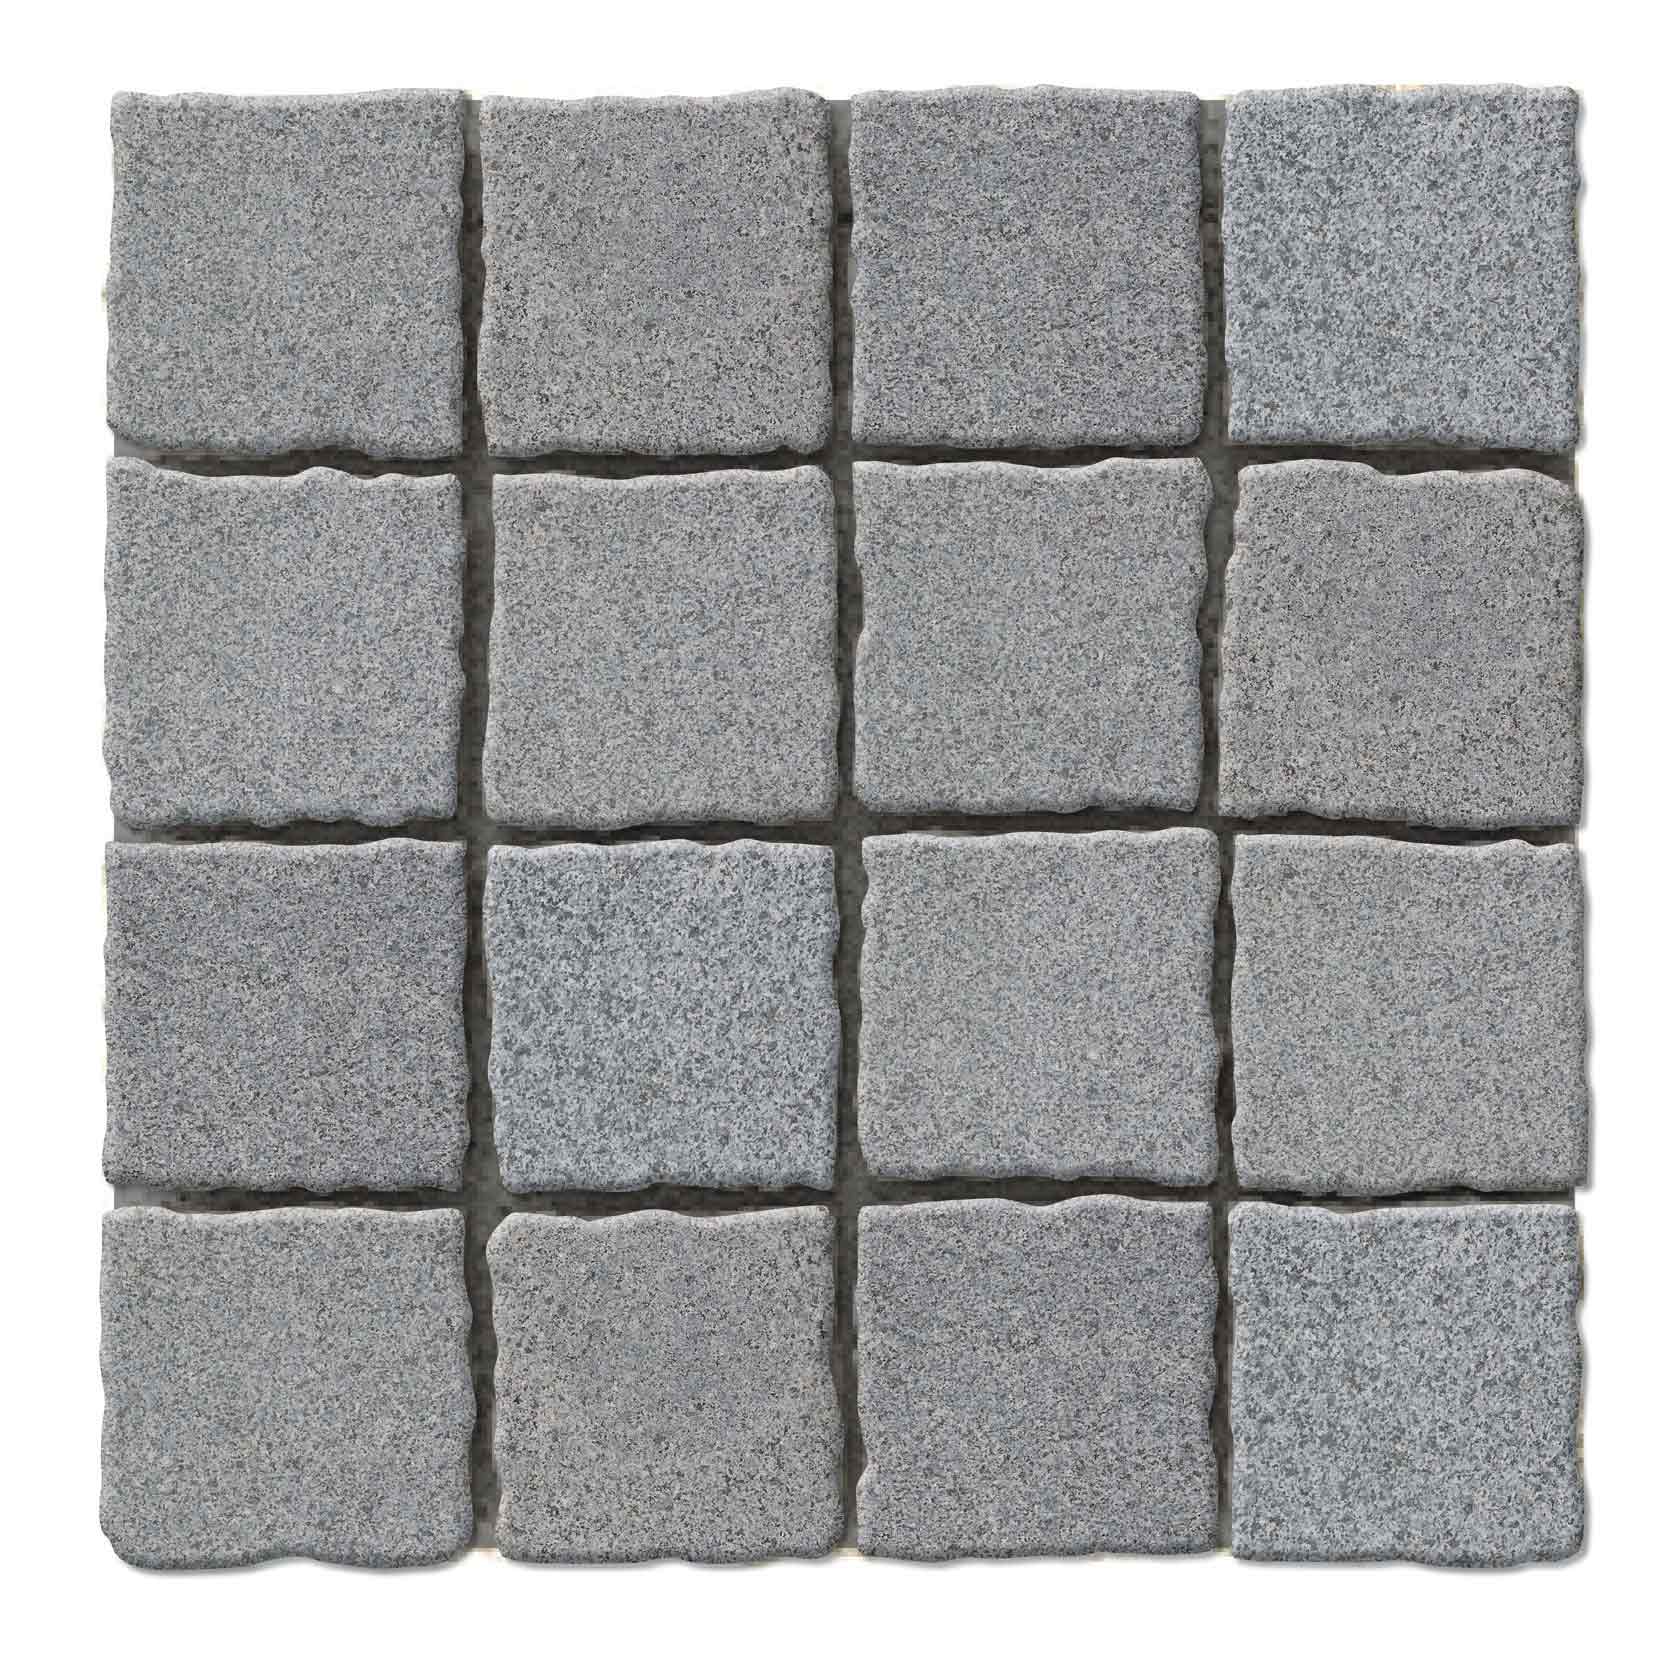 Dark Grey Granite Cobblestone